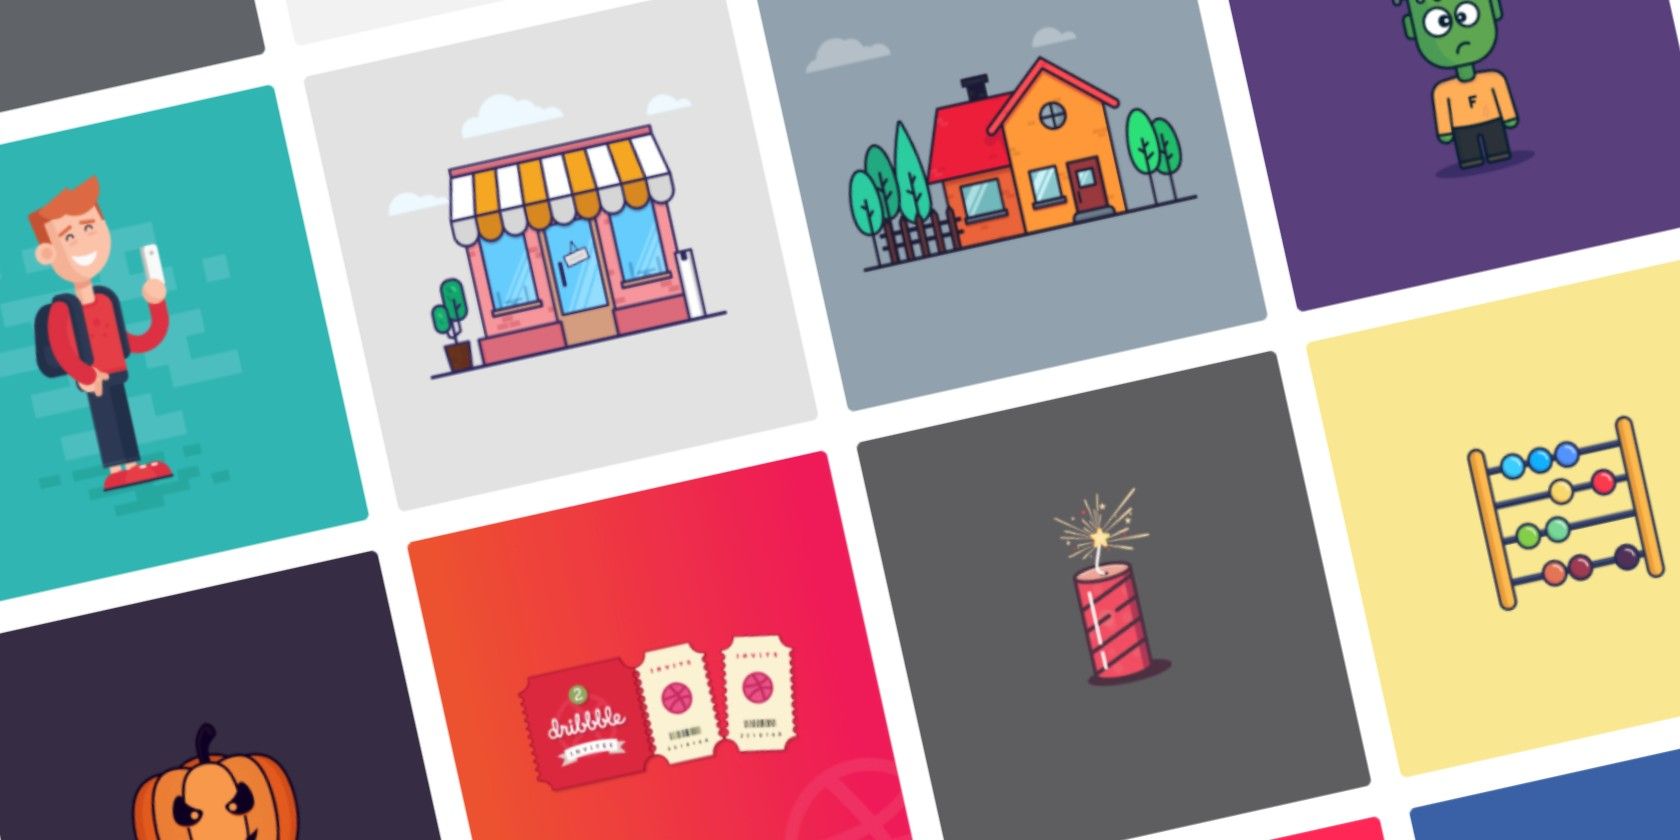 free illustrations vectors stock featured - 7 siti di stock gratuiti per scaricare illustrazioni prive di copyright e vettori senza attribuzione